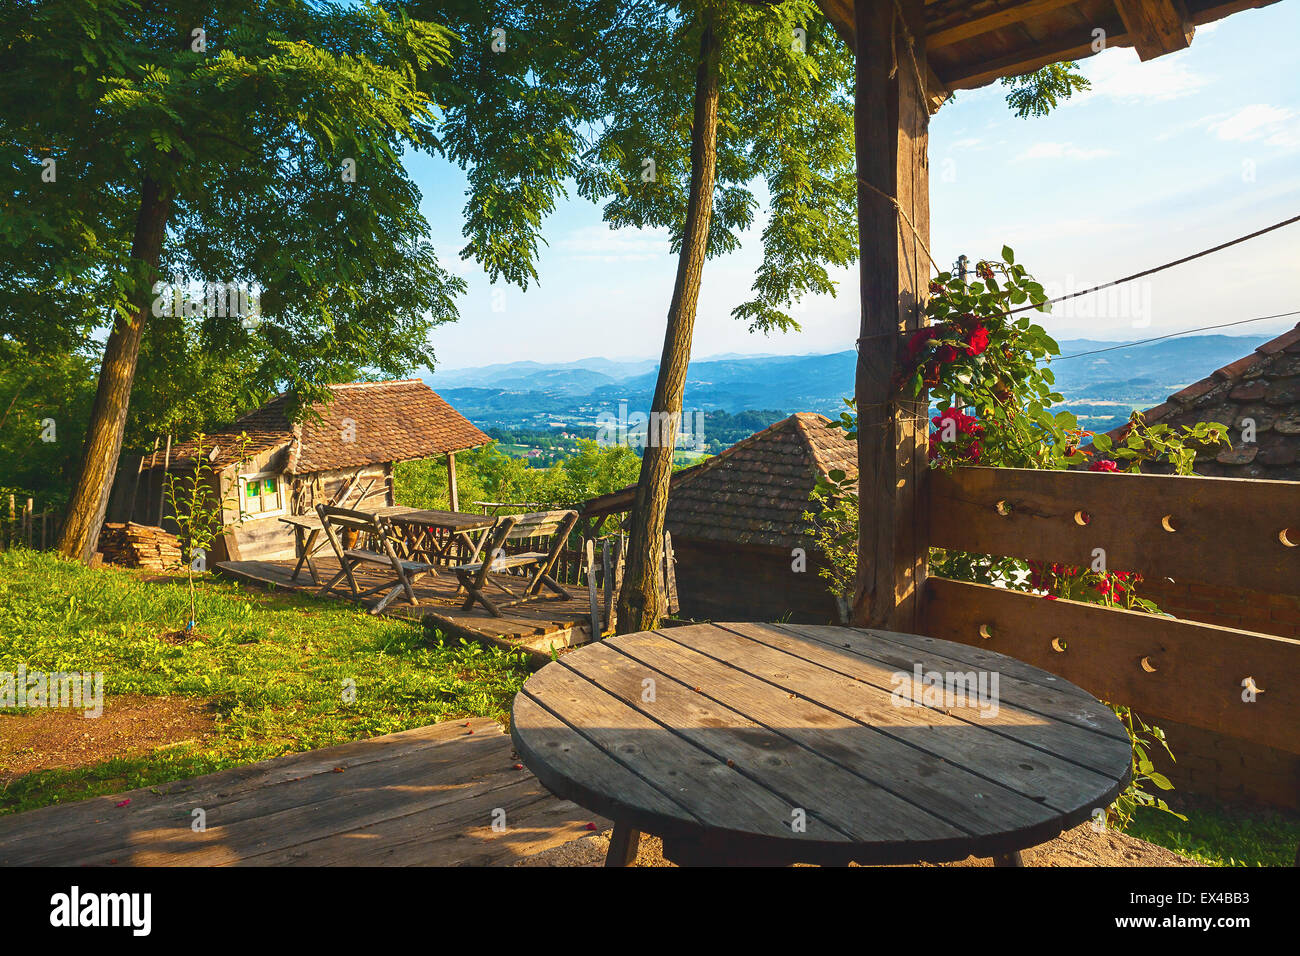 Alte hölzerne Retro-Haushalt, Details eines Gartens mit fantastischen Blick auf die Natur, Sommersaison während des Tages. Stockfoto